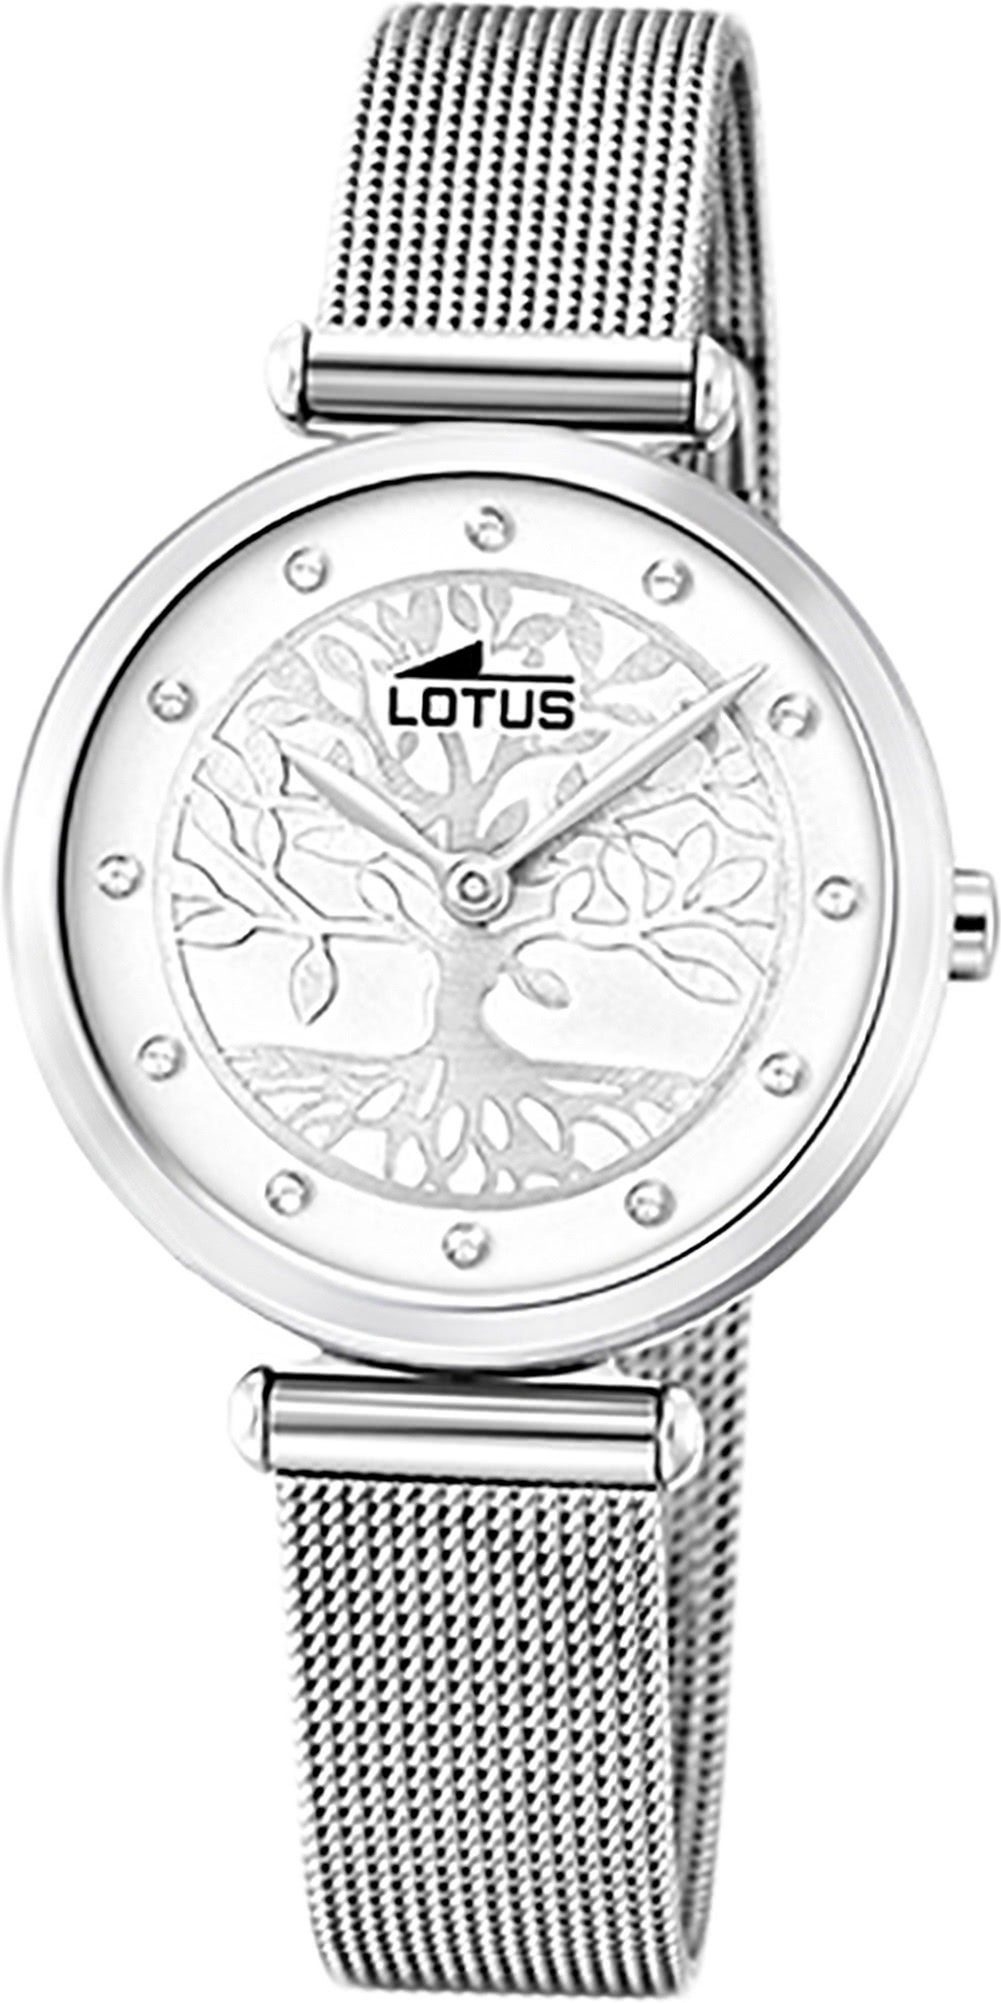 Lotus Quarzuhr LOTUS Edelstahl Damen Uhr 18708/1, Damenuhr mit Edelstahlarmband, rundes Gehäuse, klein (ca. 29mm), Fashi